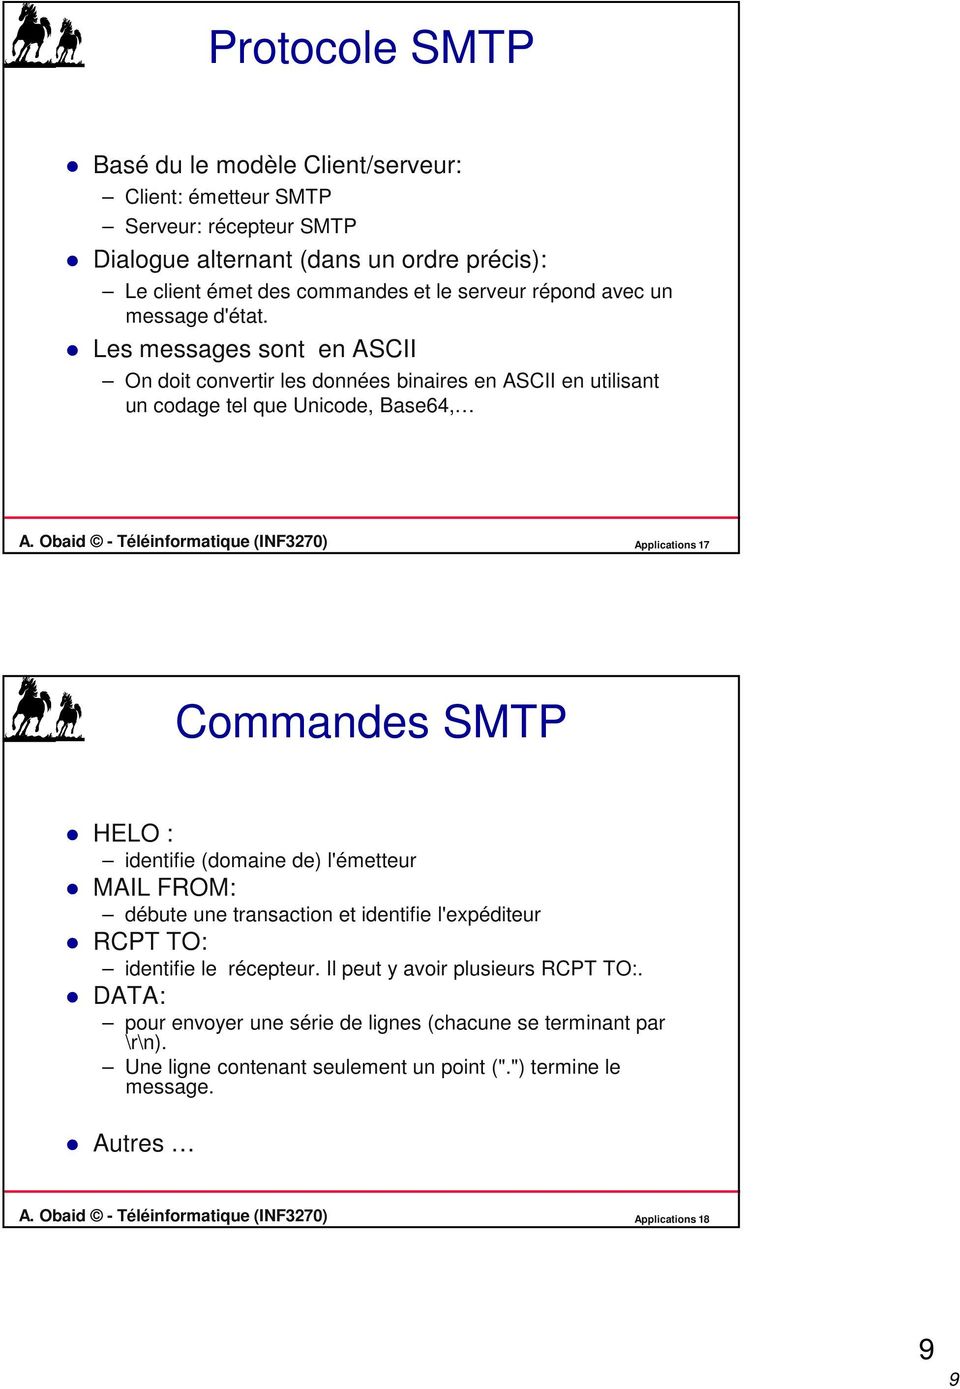 Obaid - Téléinformatique (INF3270) Applications 17 Commandes SMTP HELO : identifie (domaine de) l'émetteur MAIL FROM: débute une transaction et identifie l'expéditeur RCPT TO: identifie le